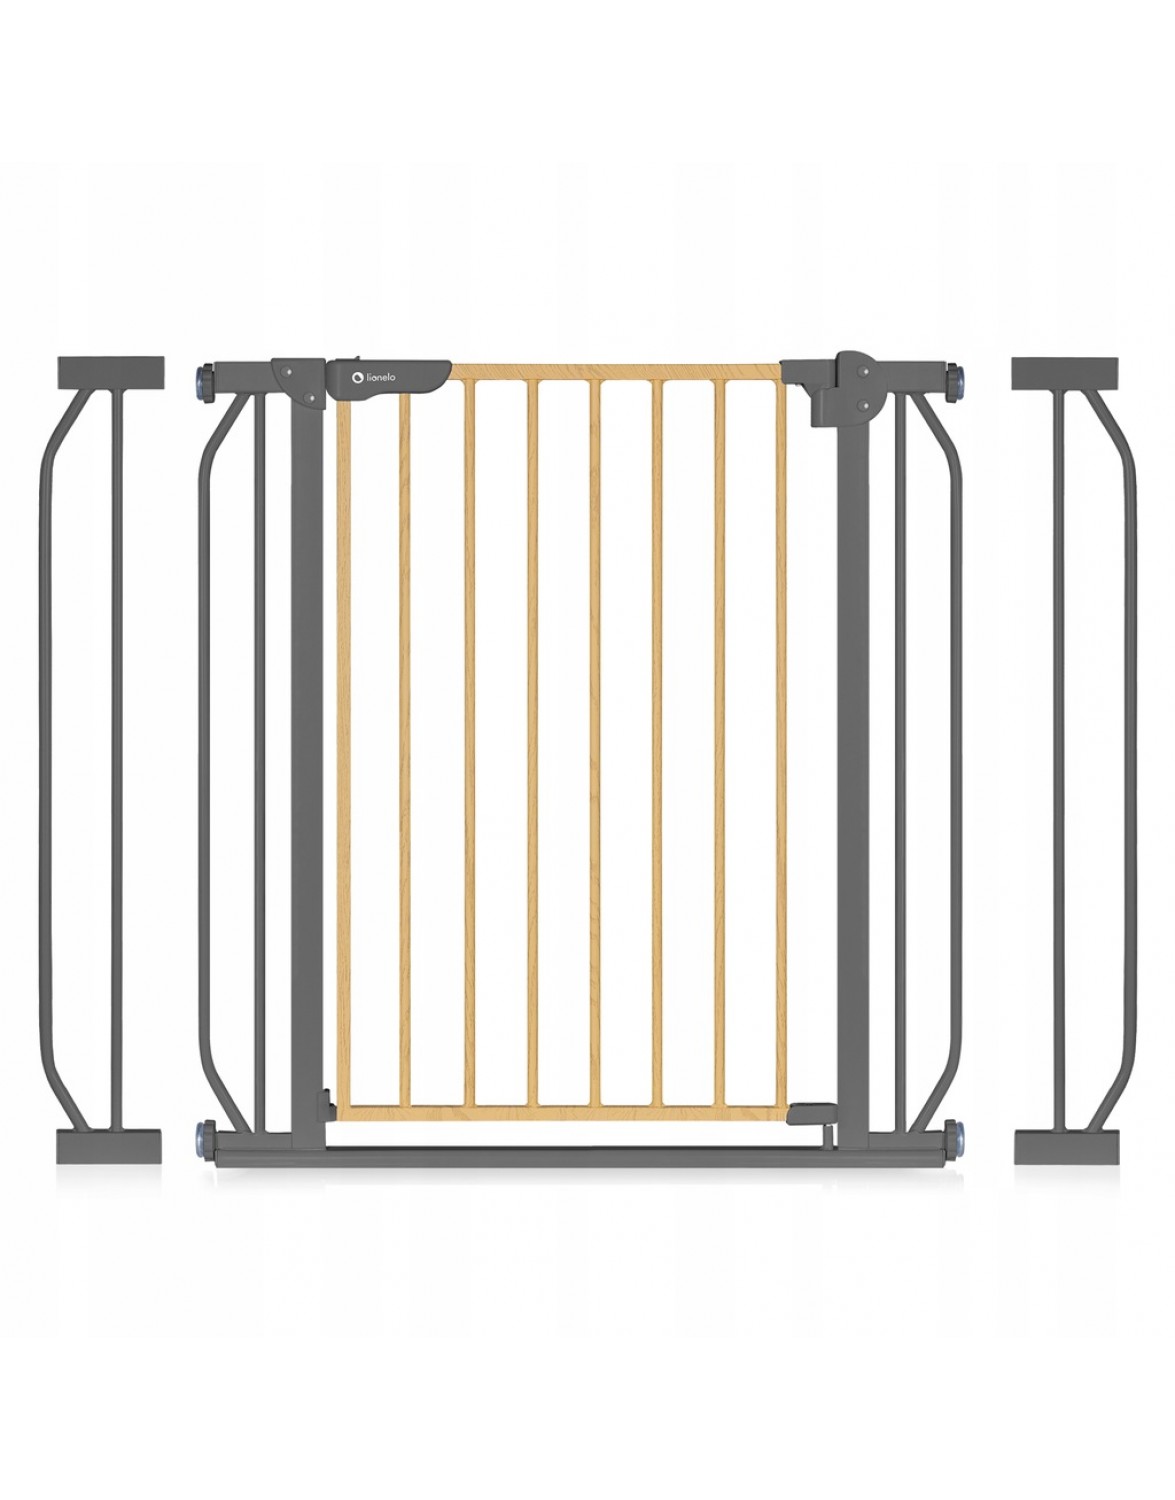 Защитные ворота LIONELO TRUUS, защитные ворота для дверей, лестниц до 105 см, коричневые и бежевые оттенки 5903771705912